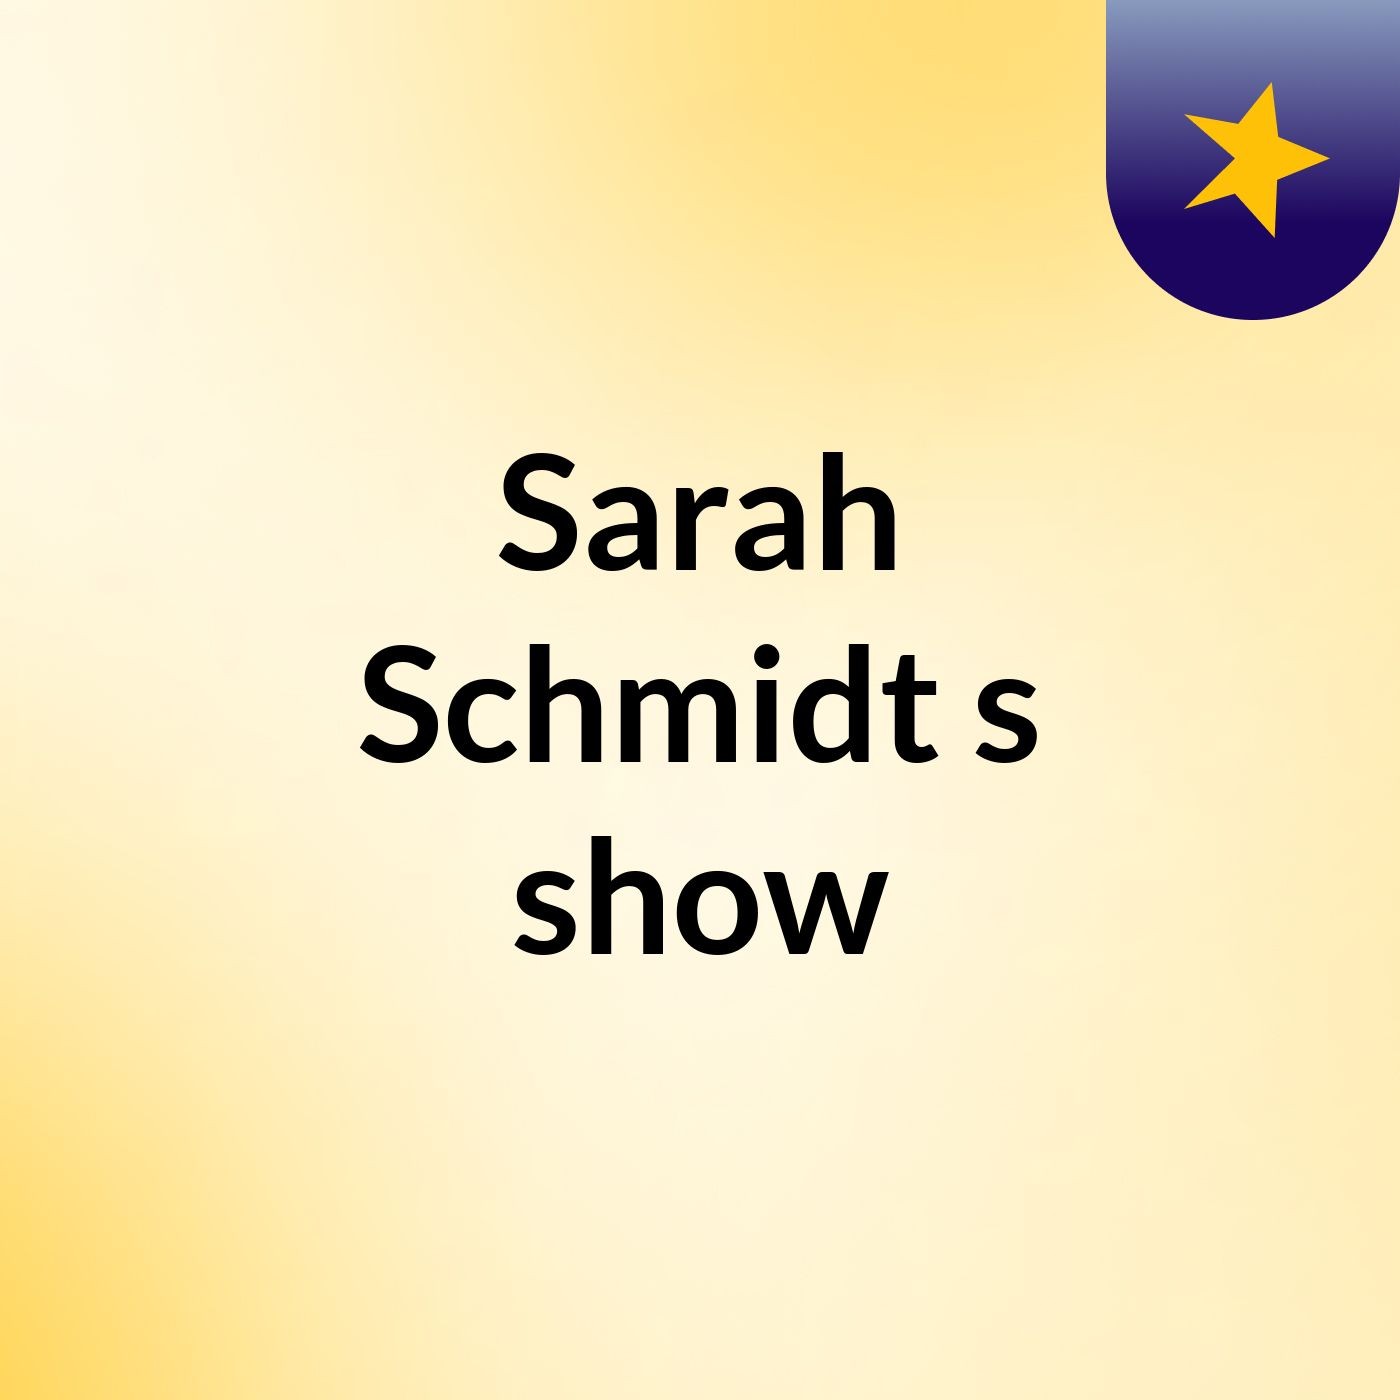 Episode 2 - Sarah Schmidt's show